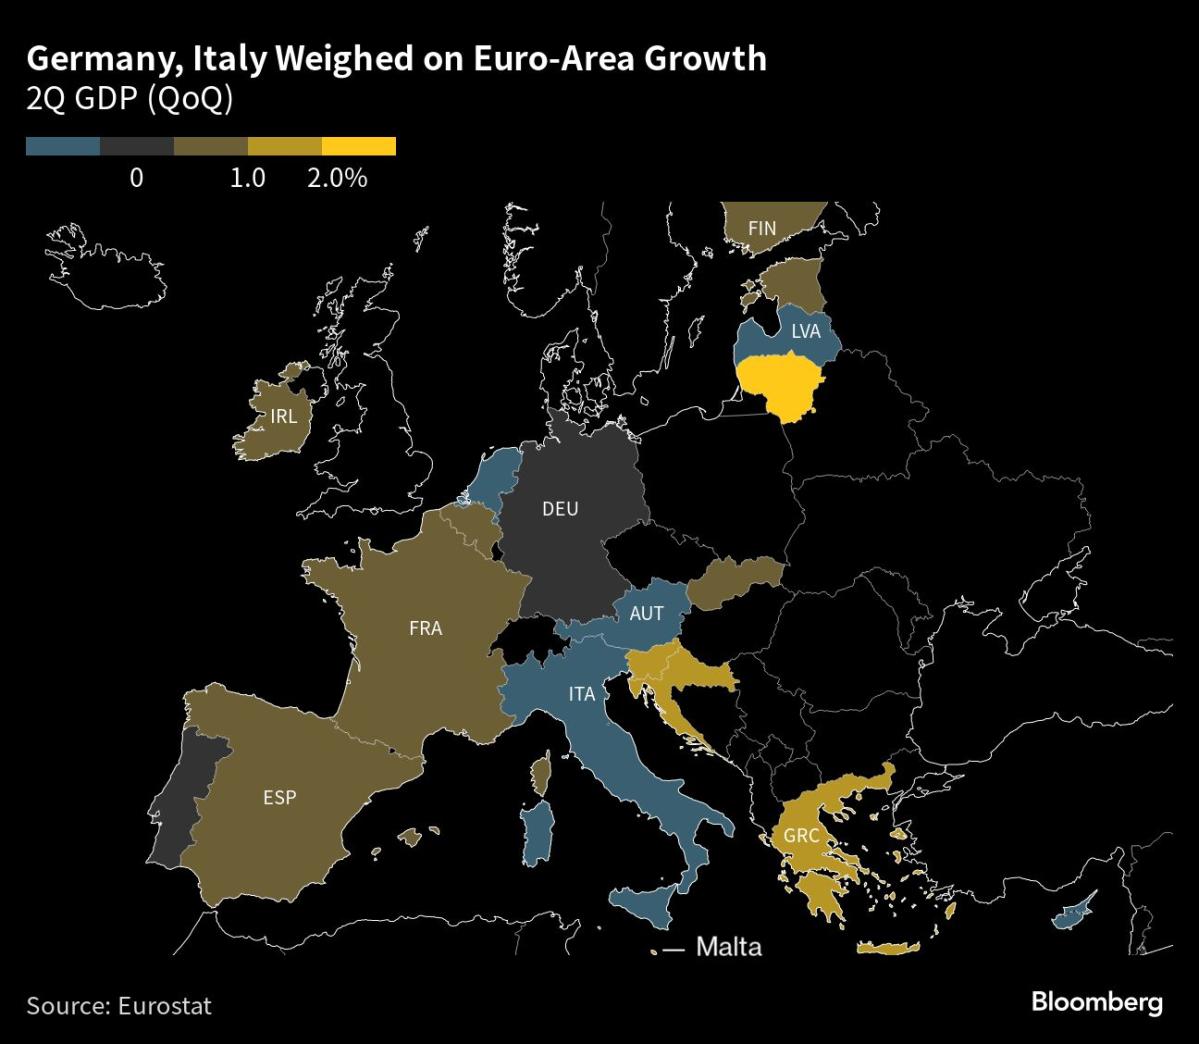 Die Eurozone wächst kaum, nachdem der Exporteinbruch den Druck erhöht